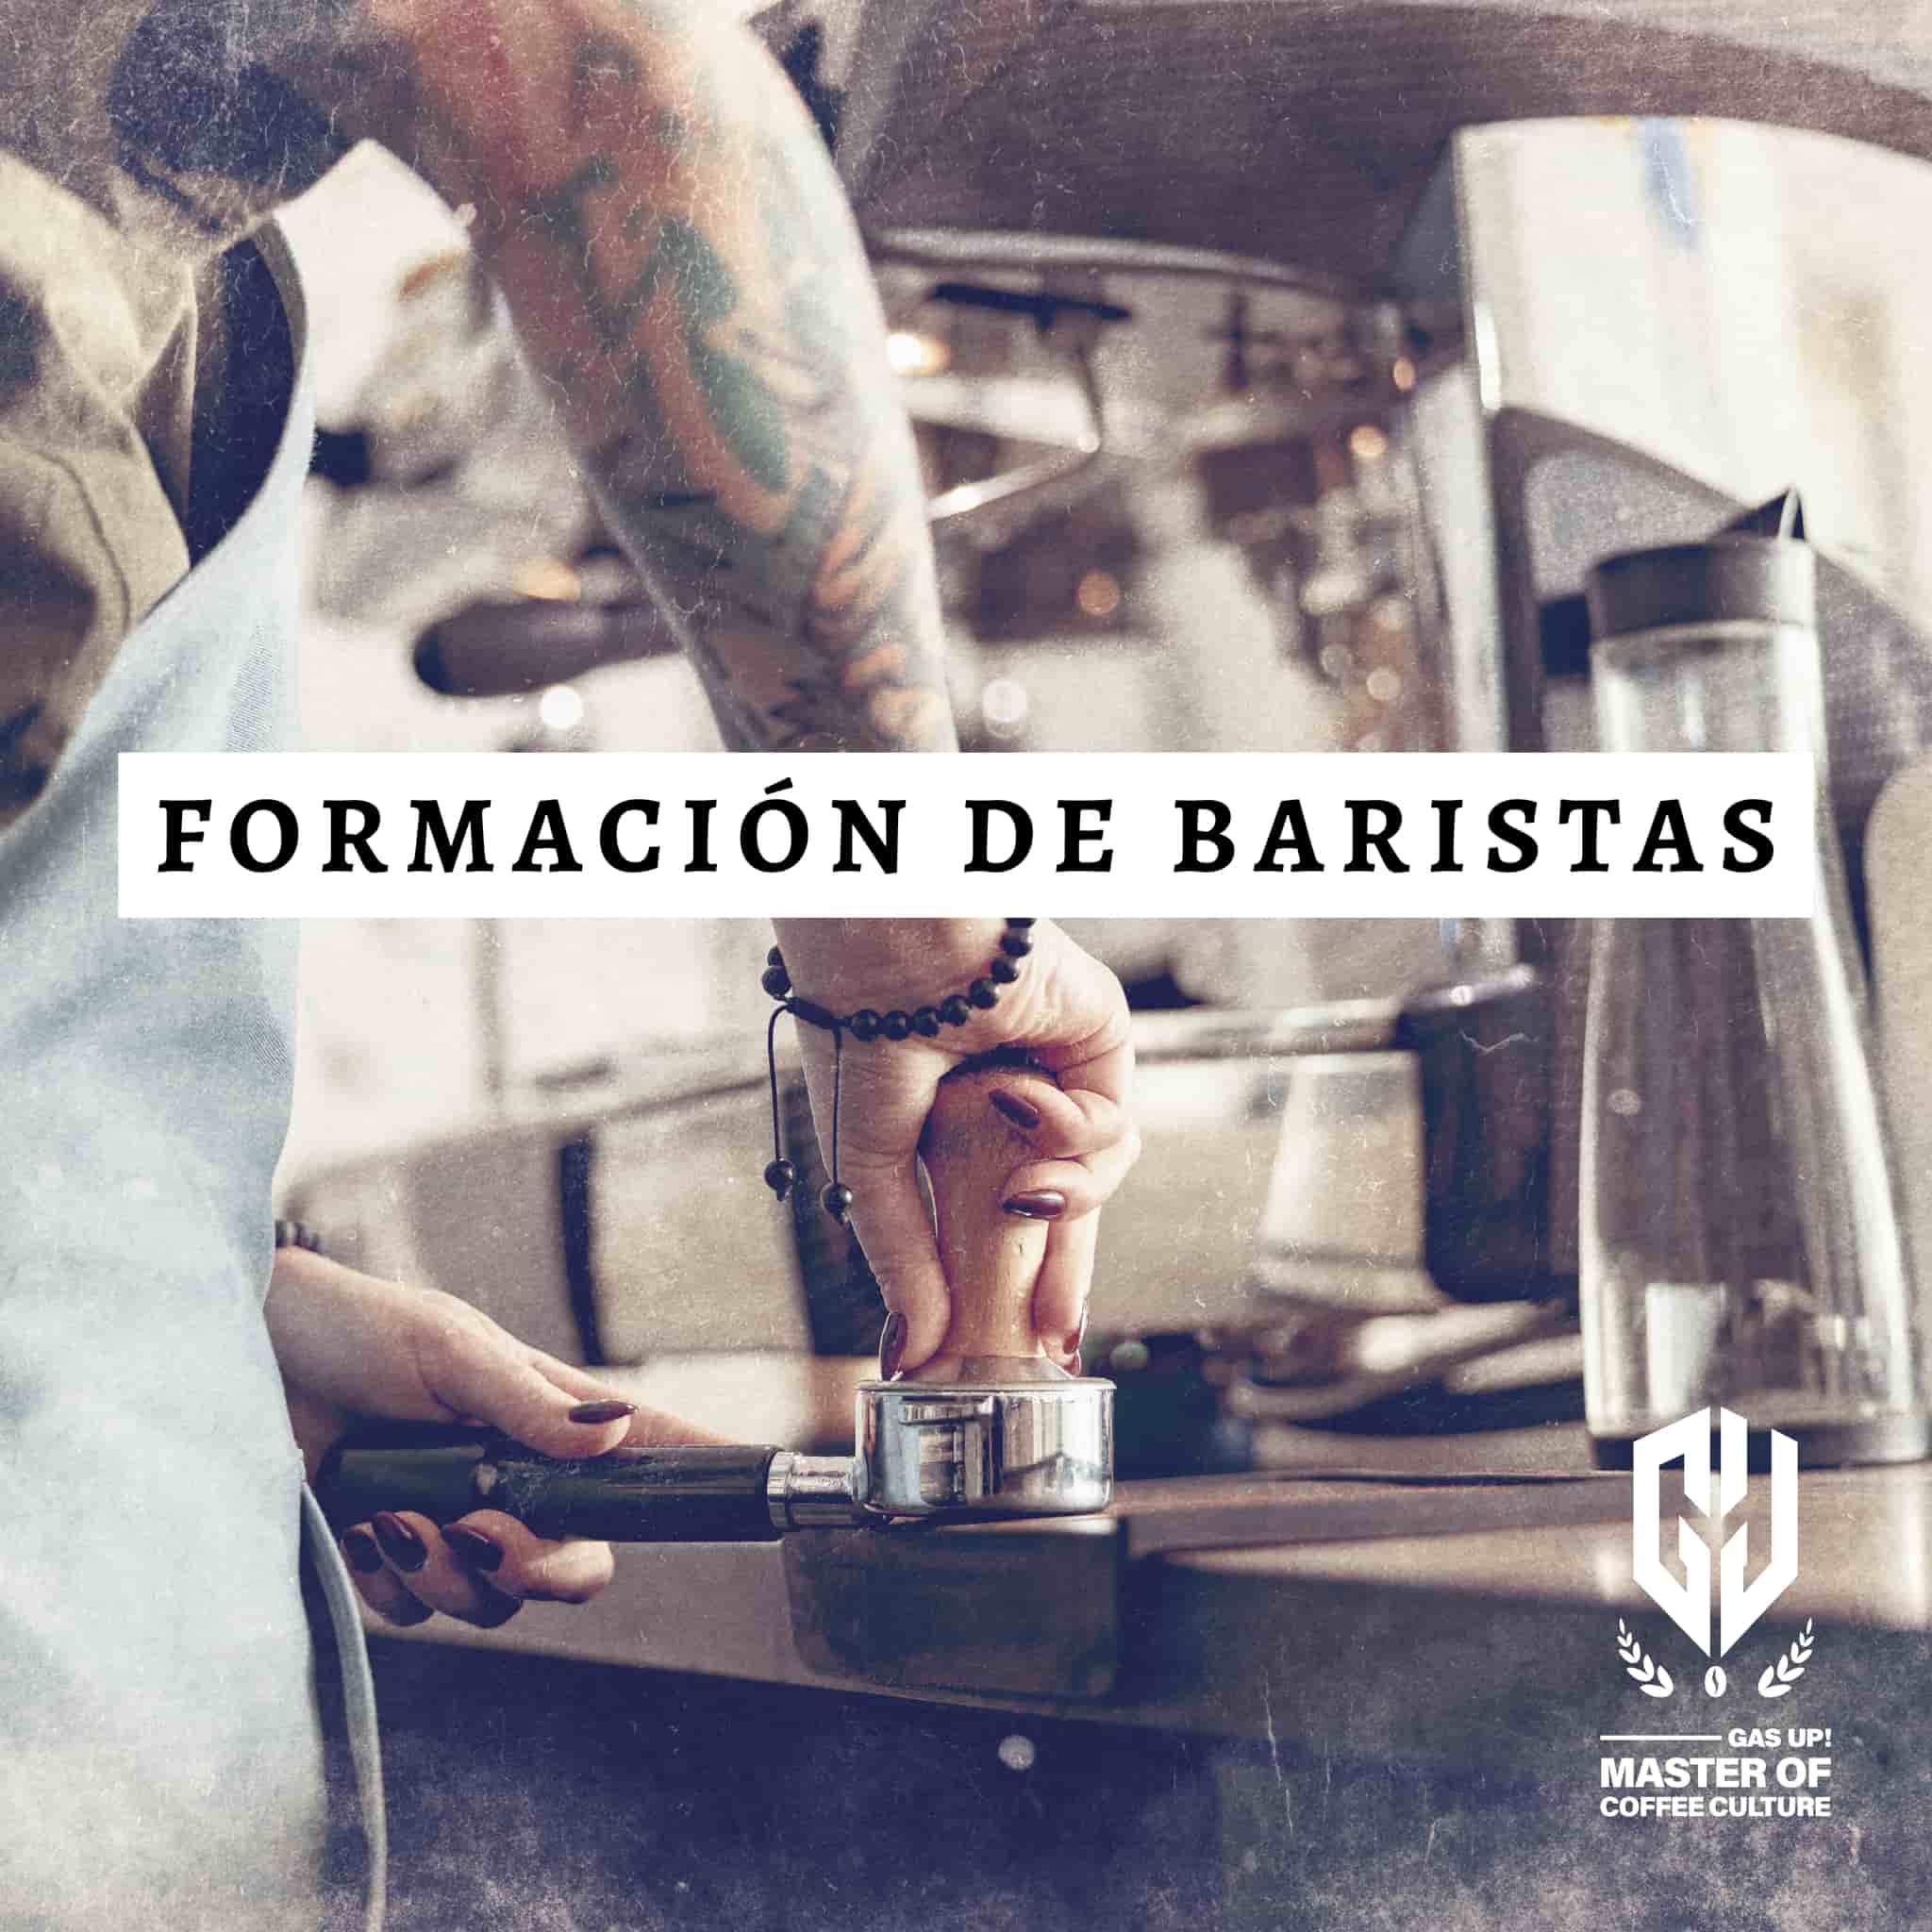 CURSO PARA BARISTAS - GAS UP! MASTER COFFEE